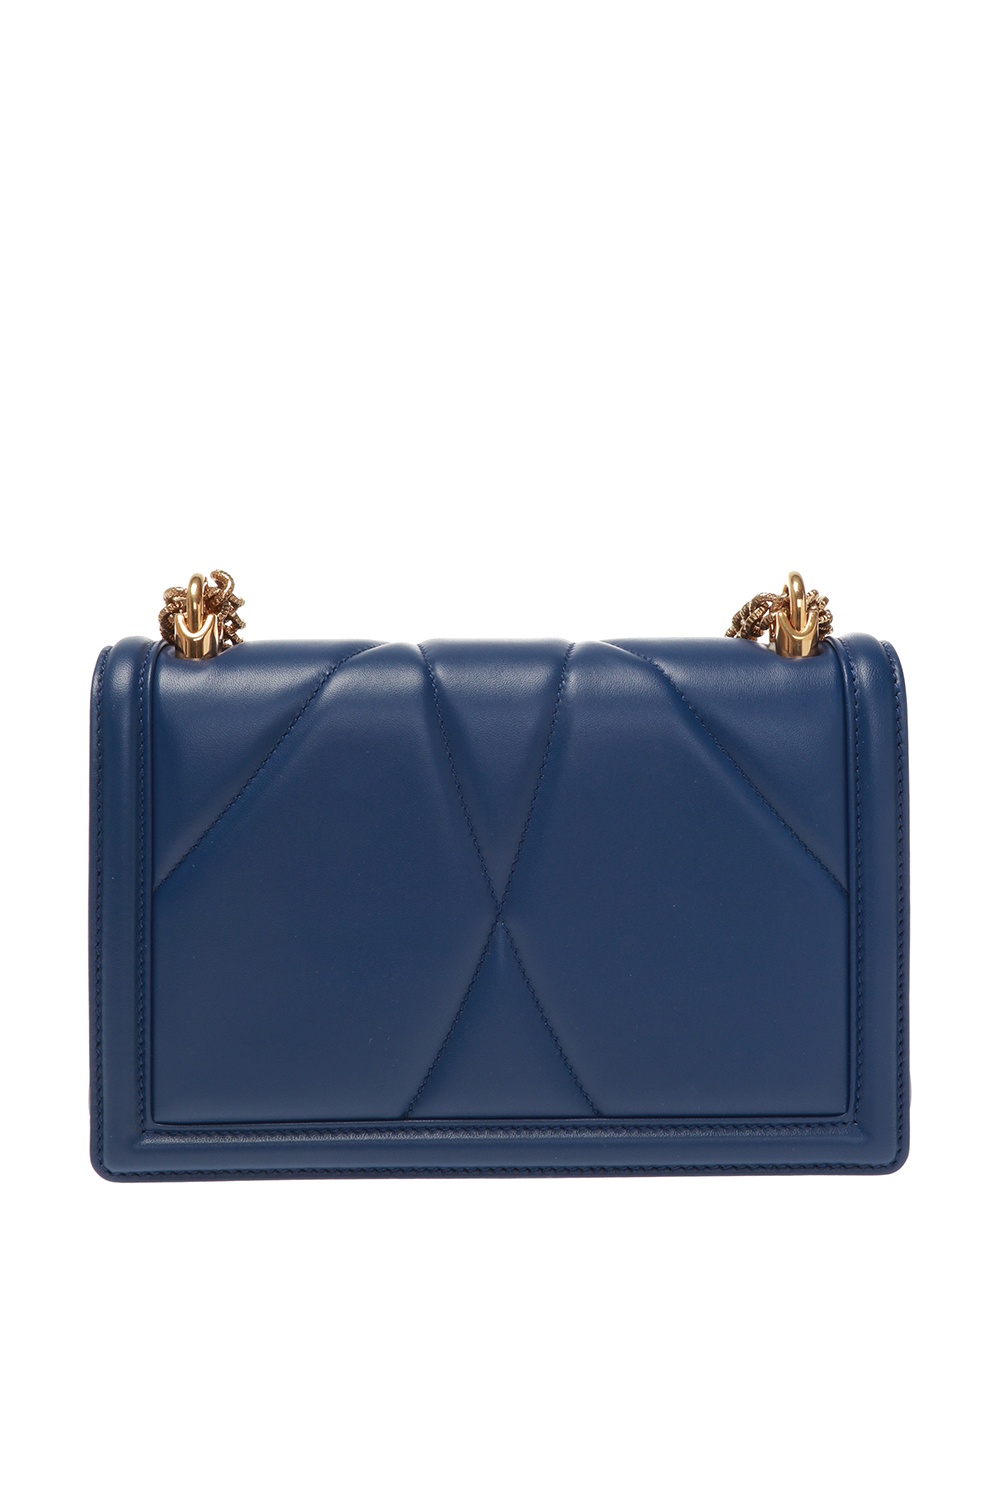 Navy blue Dolce & Gabbana Devotion embellished shoulder bag Dolce